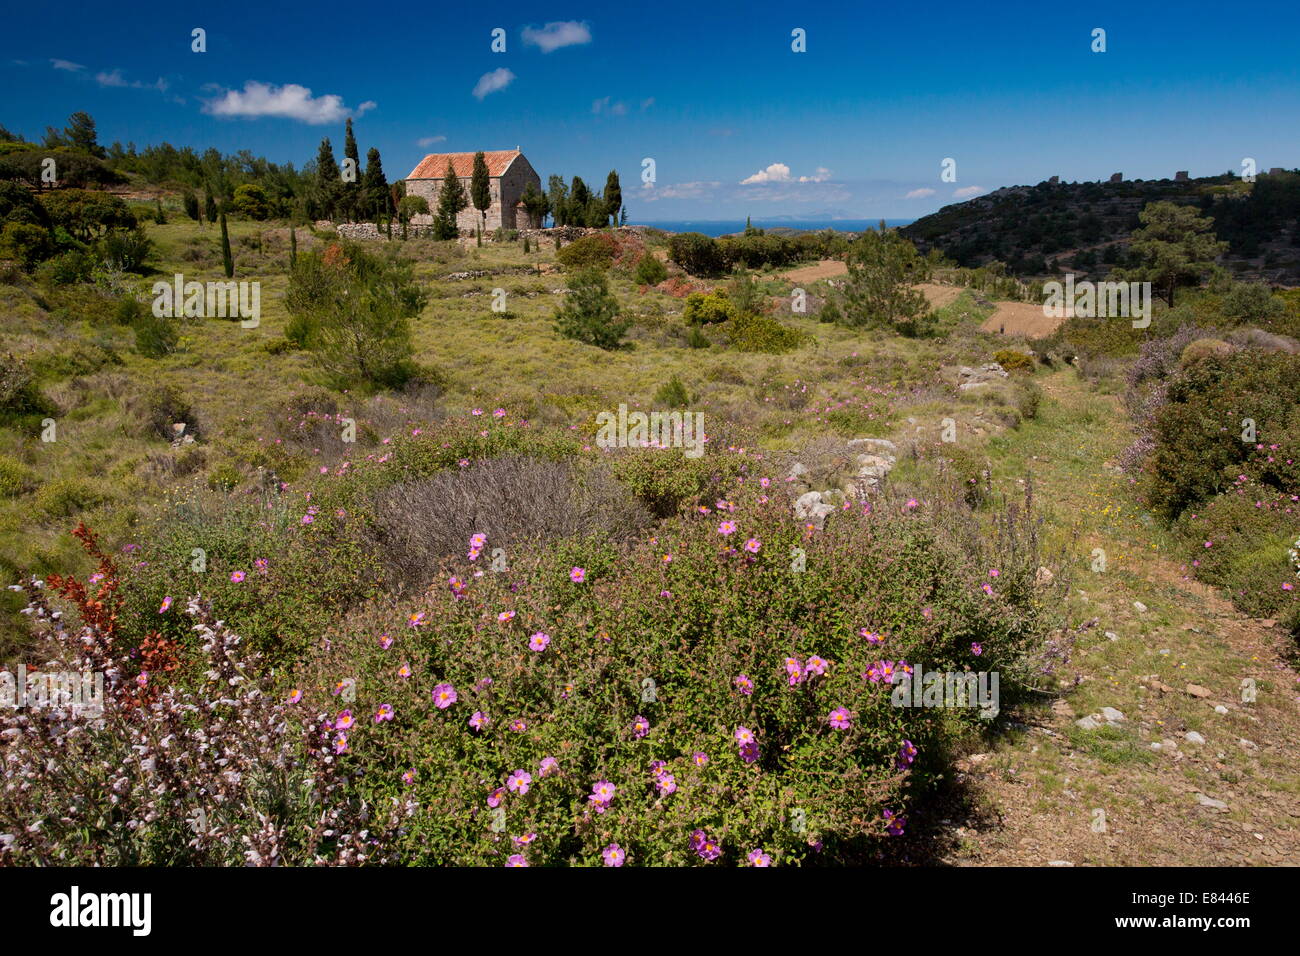 Blumige Garrigue und Weiden im Frühjahr, um die Kirche von Aghios Antonios, zwischen Olympi und Mesta, Chios, Griechenland. Stockfoto